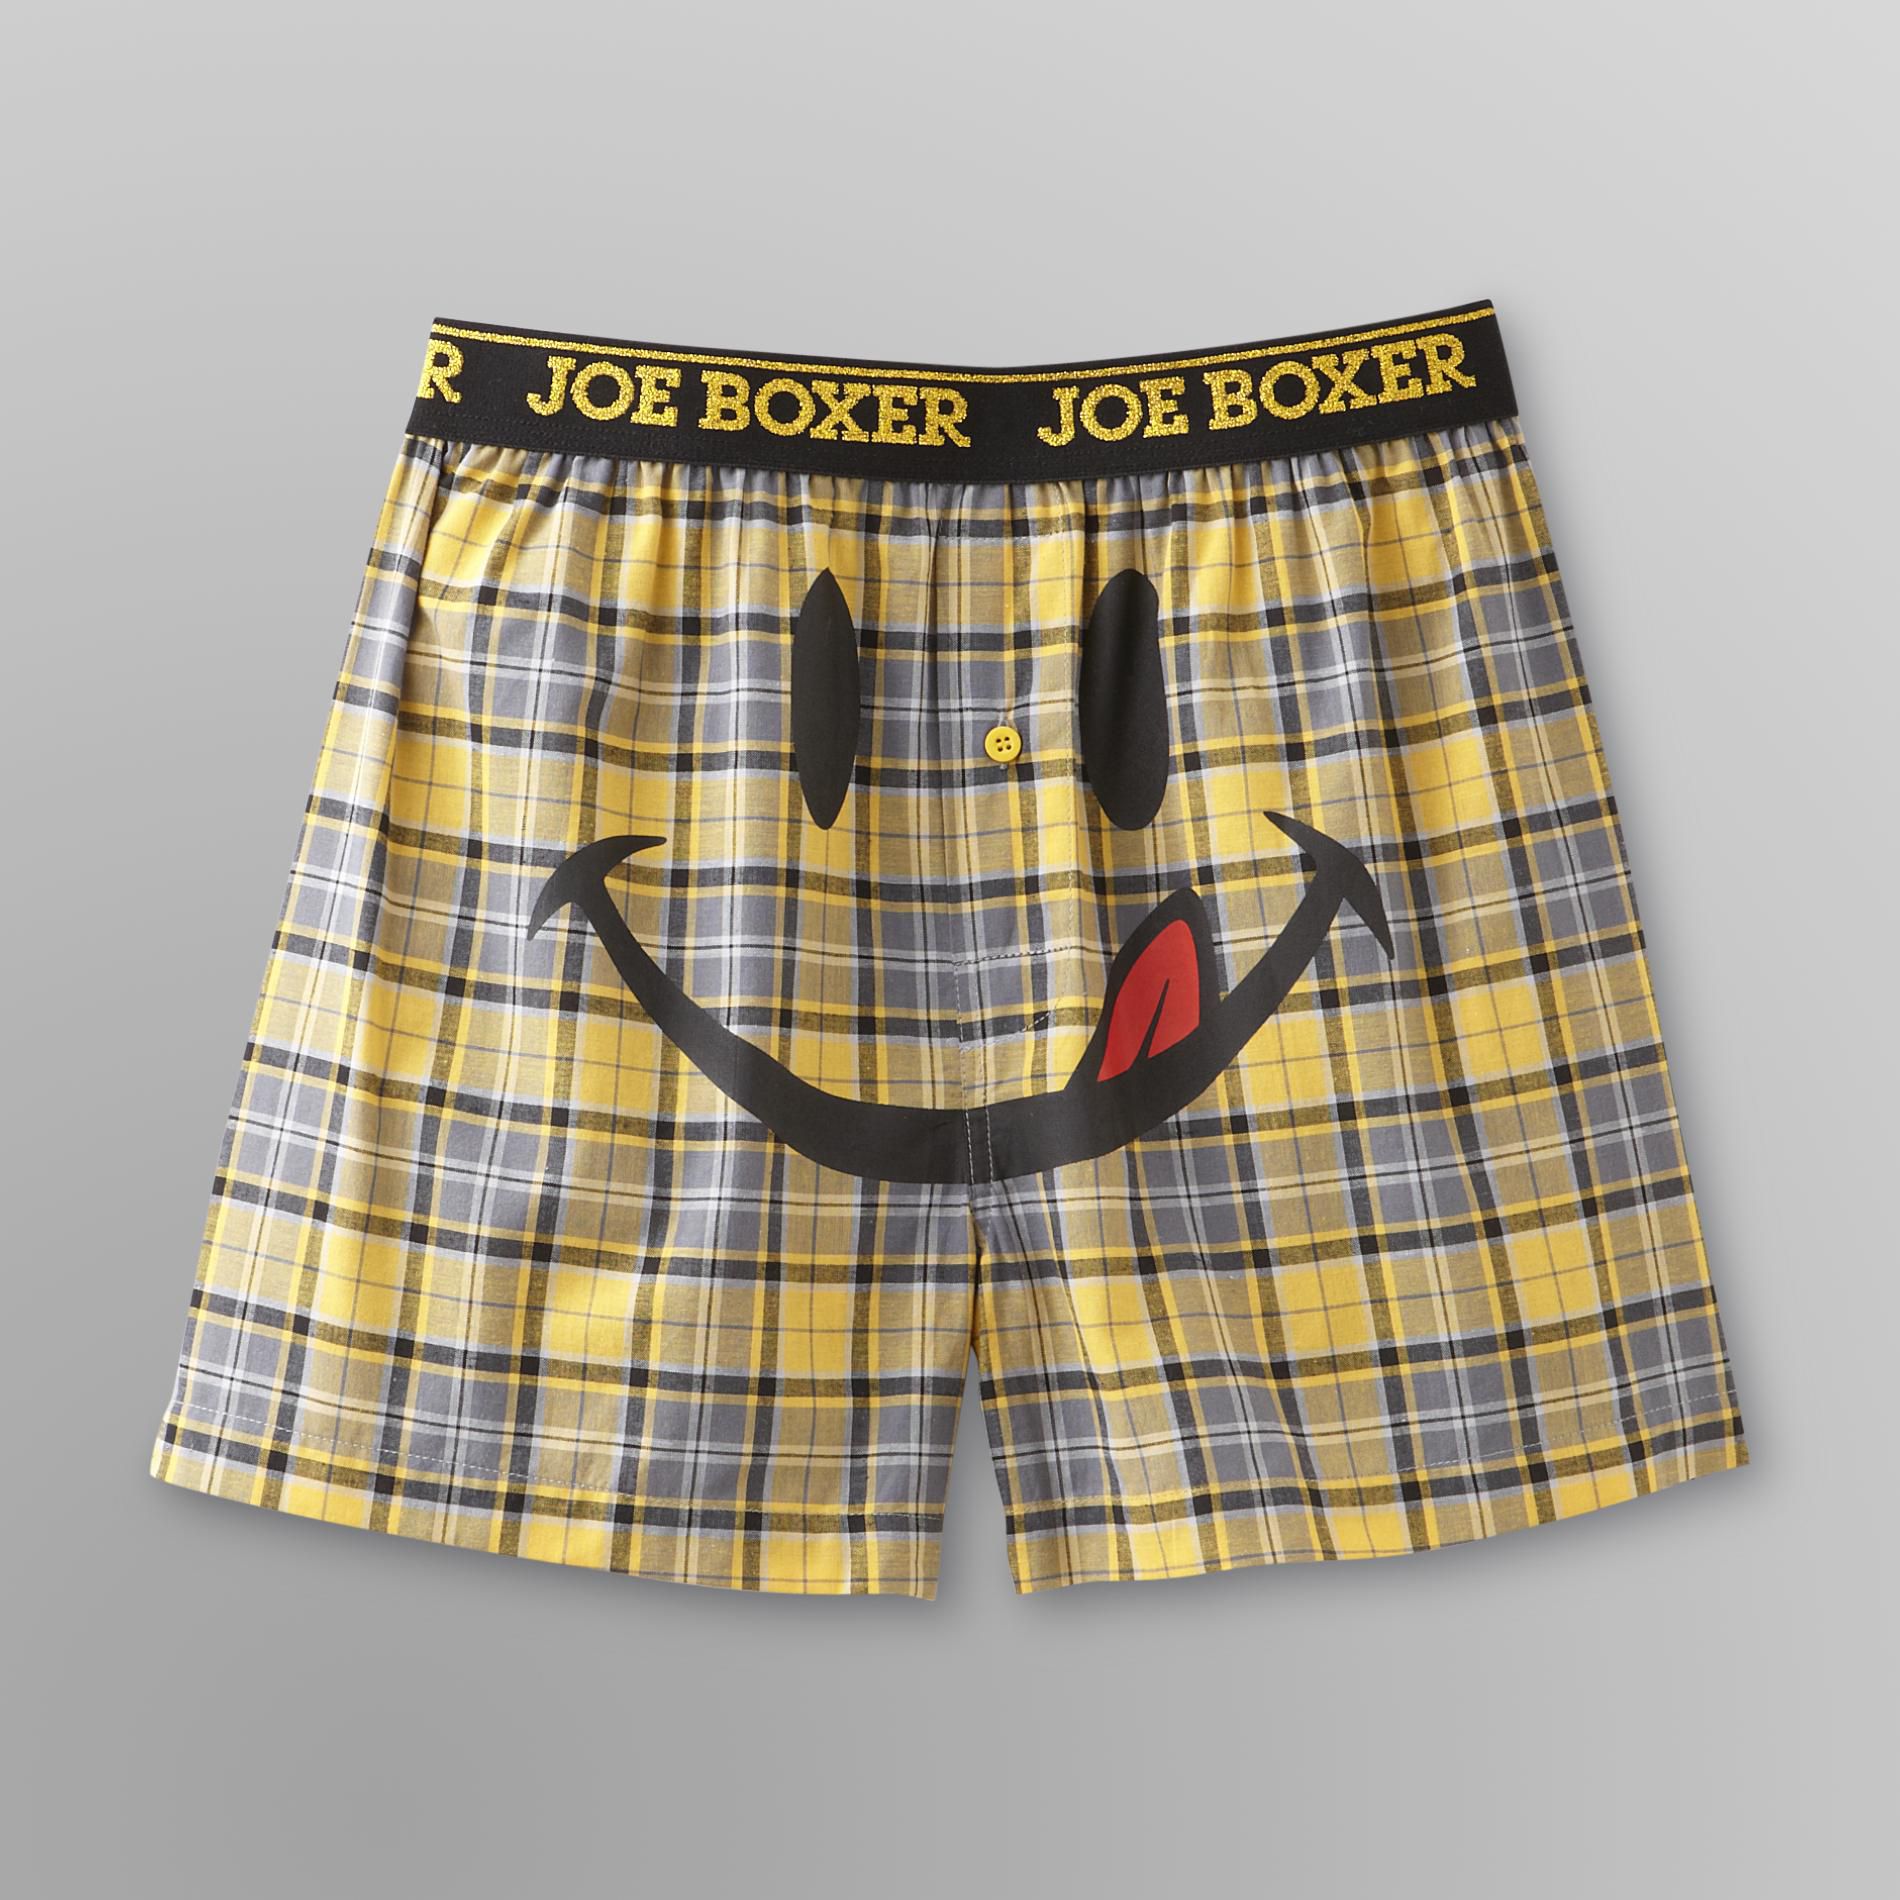 Joe Boxer Men's Boxer Shorts - Plaid Licky